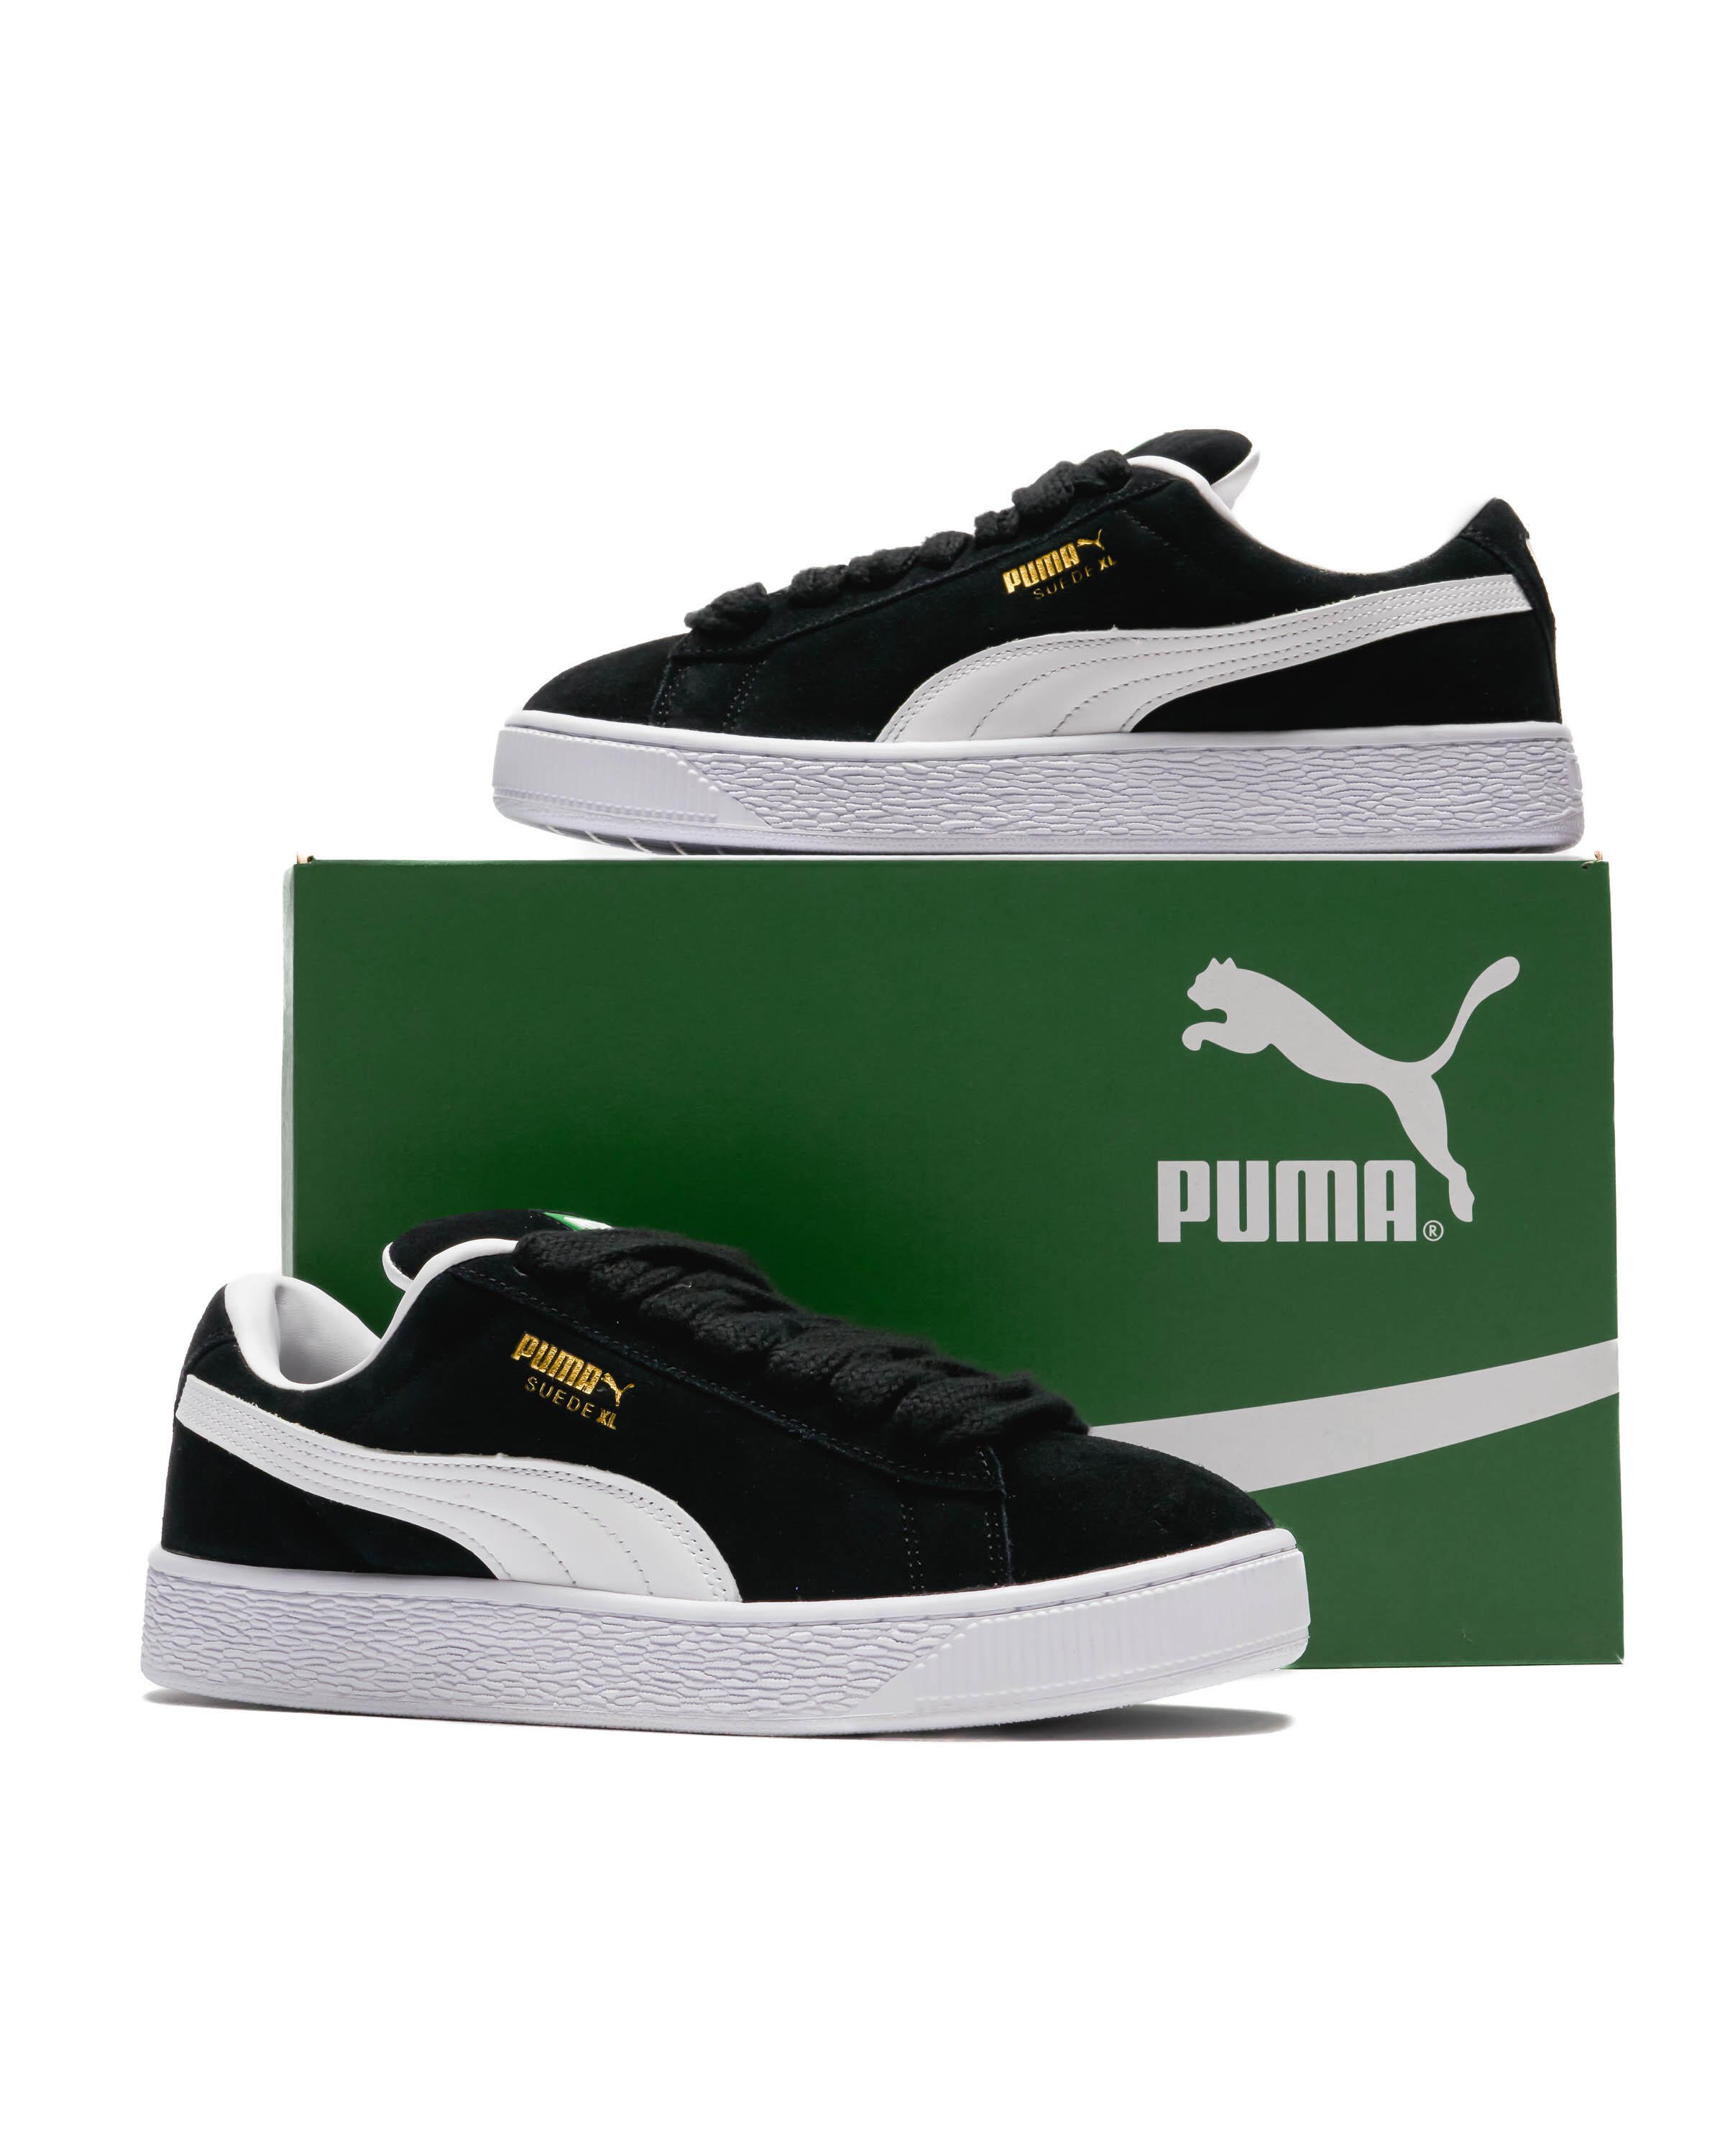 Puma Suede XL